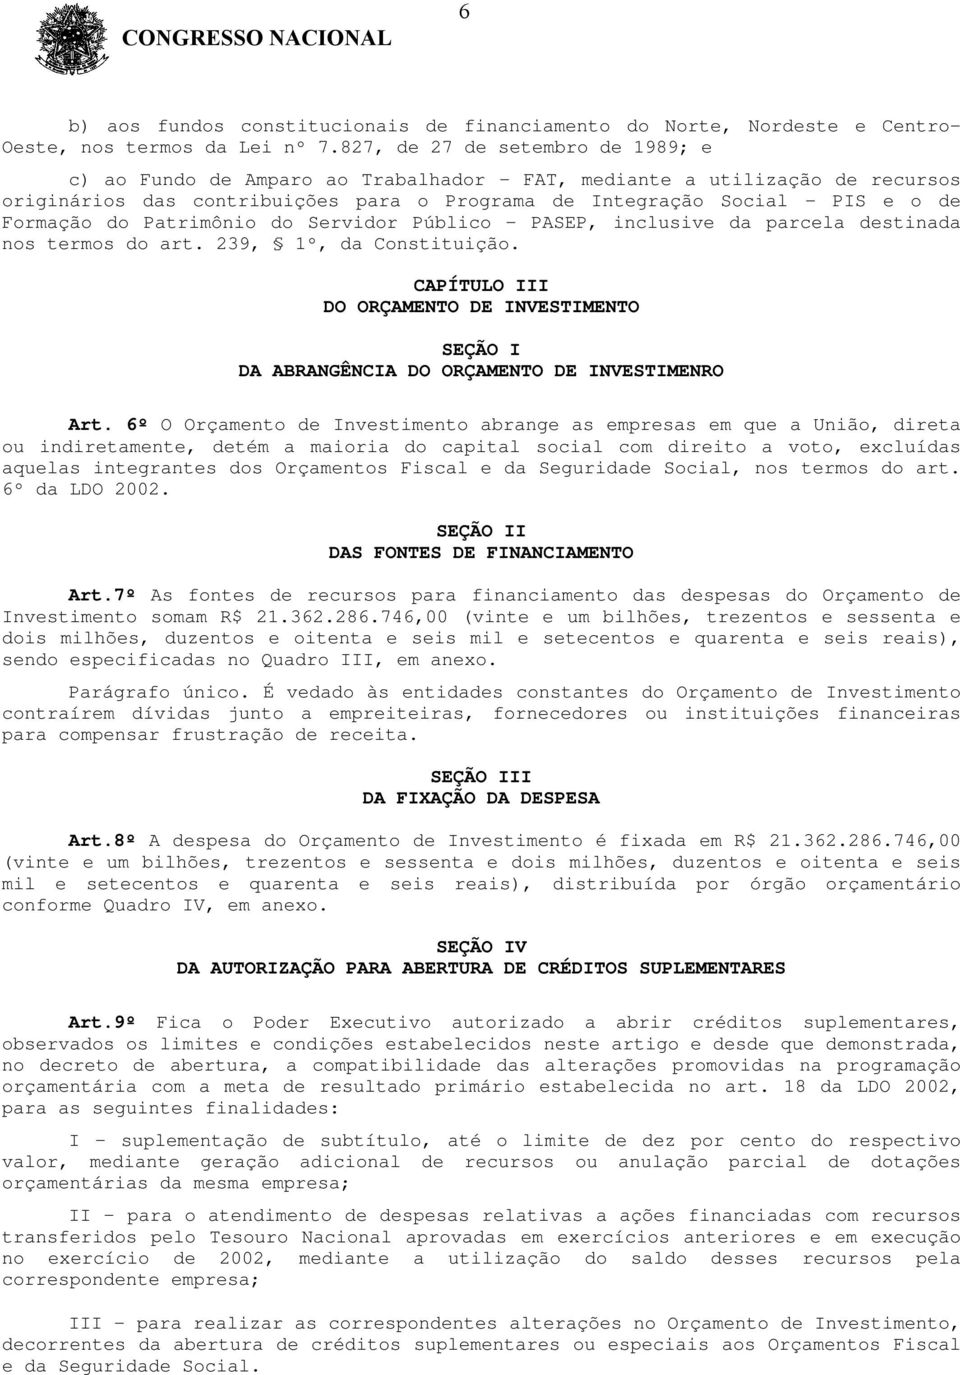 Formação do Patrimônio do Servidor Público - PASEP, inclusive da parcela destinada nos termos do art. 239, 1º, da Constituição.